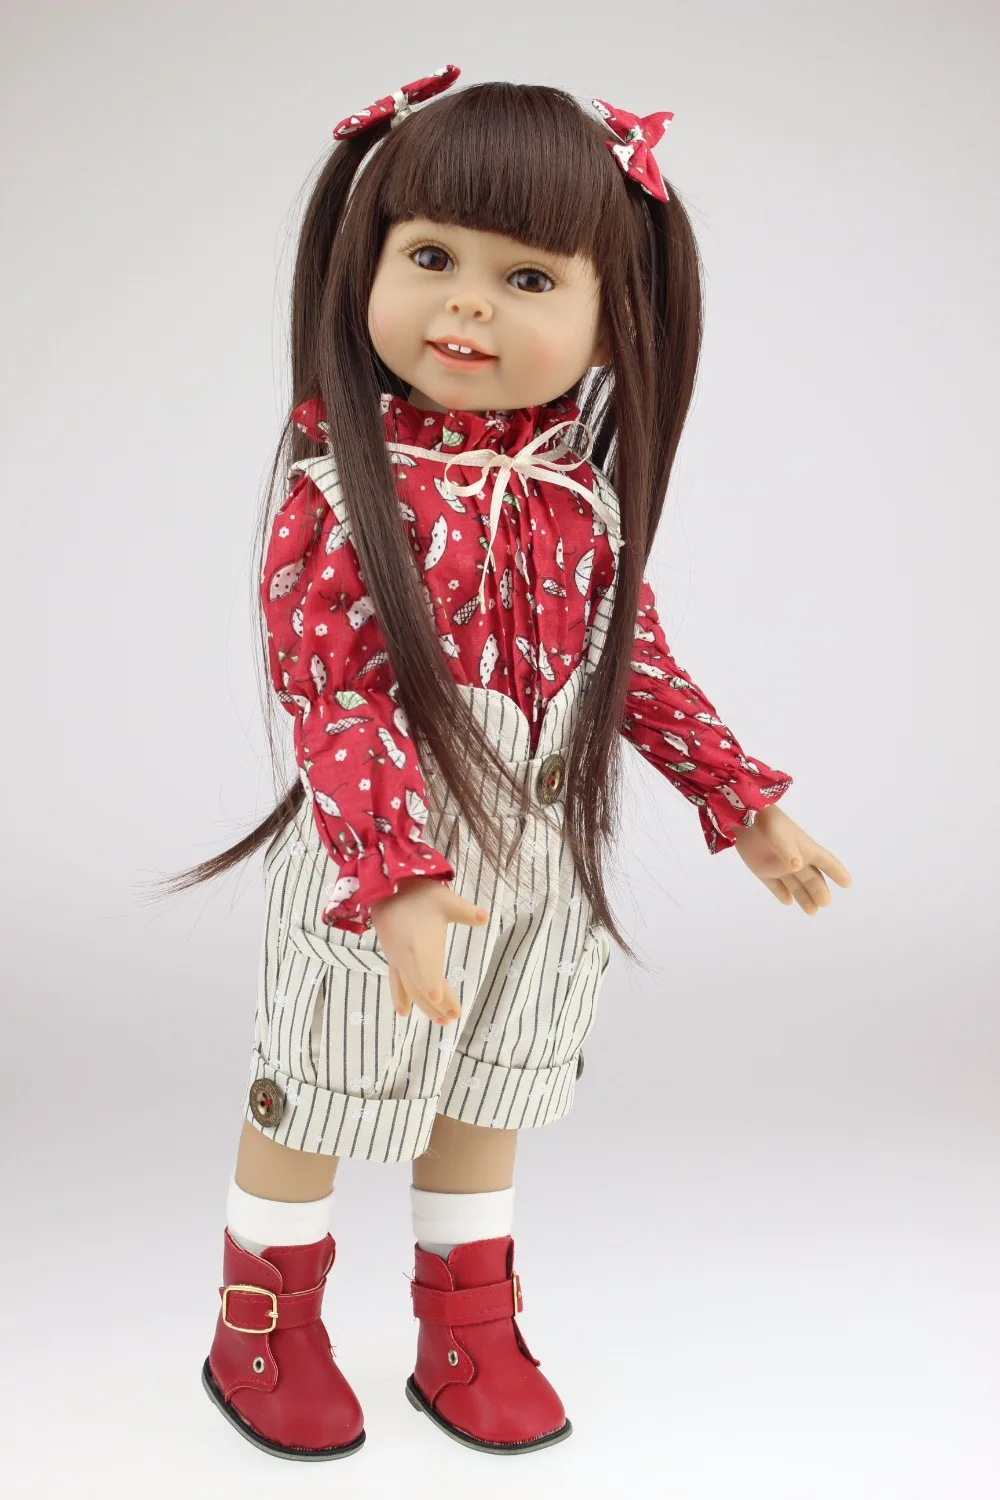 Мягкие силиконовые реборн Детские куклы DIY аксессуары 45 см Девочки игрушки куклы 18 ''игрушки для детей подарок на день рождения